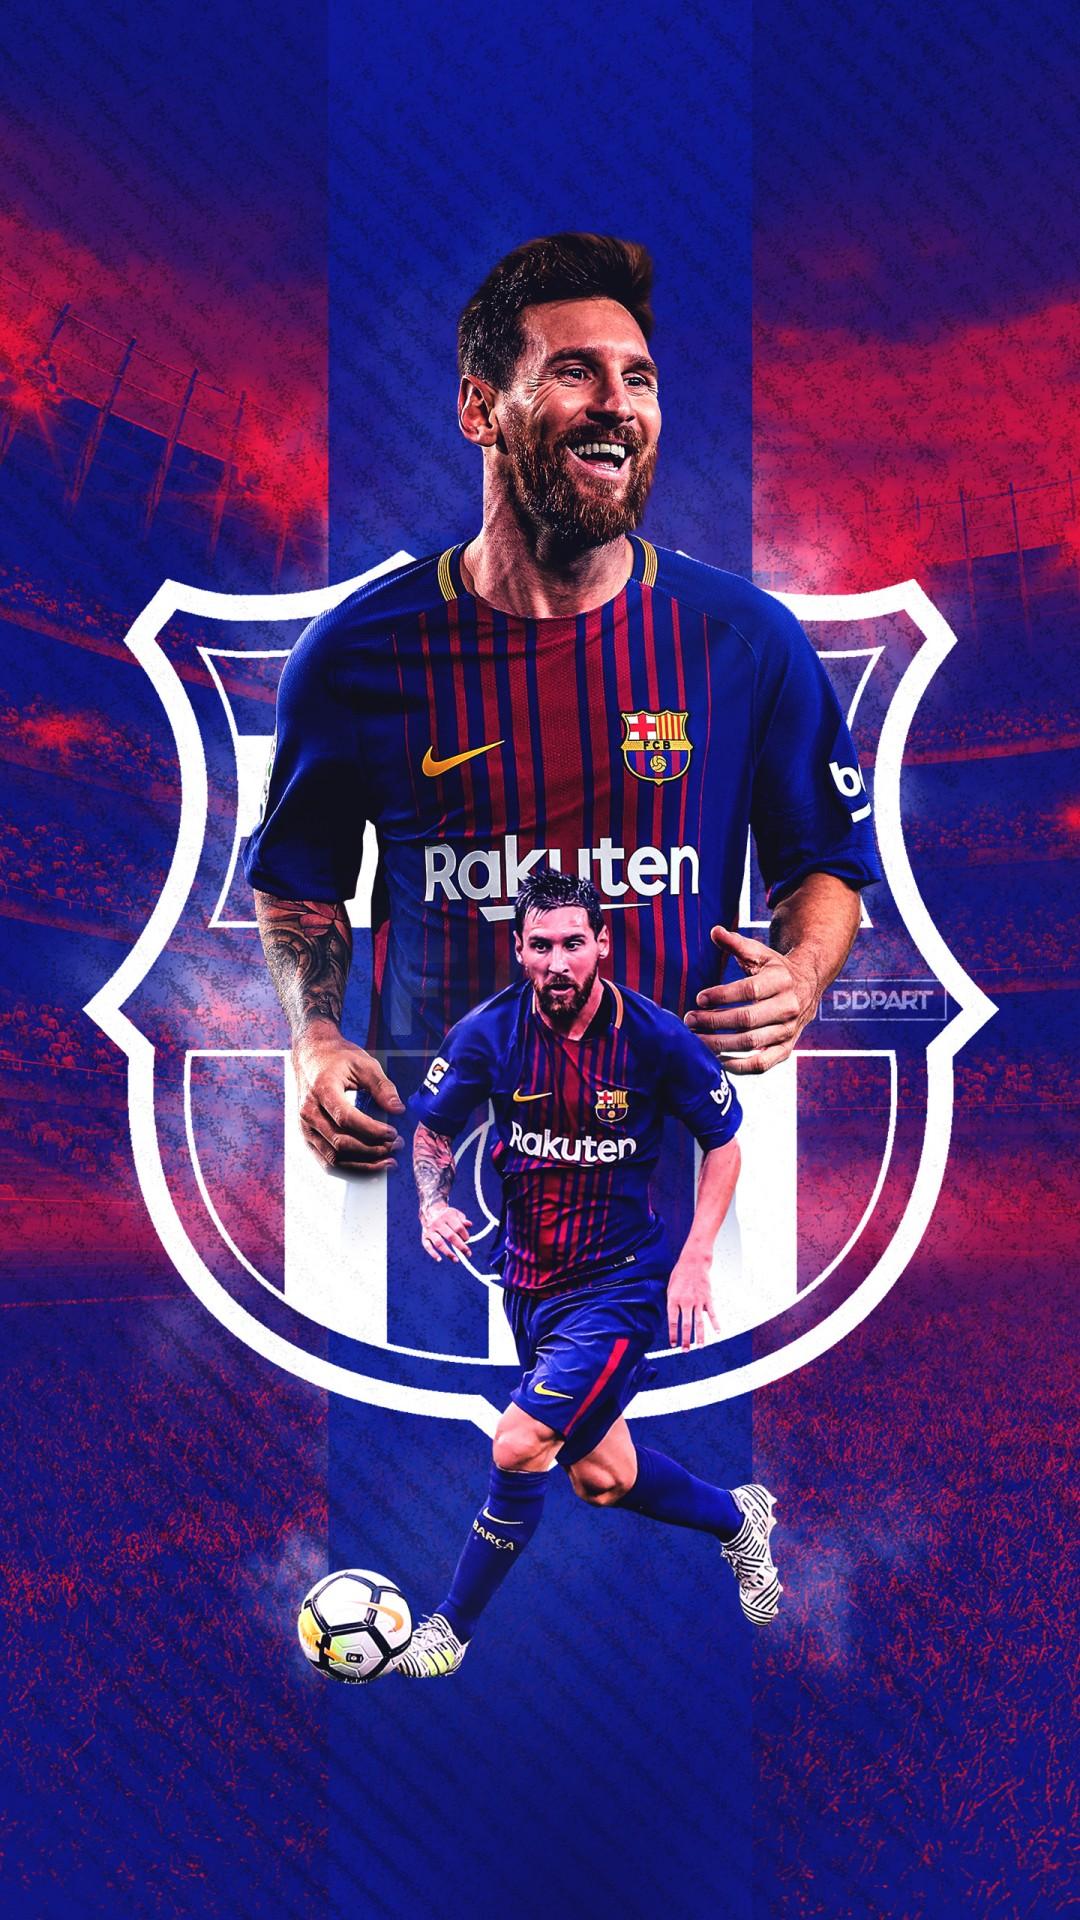 Với những ai yêu thích Messi, không thể bỏ qua bộ sưu tập ảnh nền cực chất lượng 4K của anh chàng: Messi wallpaper 4k. Bạn sẽ được chiêm ngưỡng cầu thủ bóng đá tài năng nhất thế giới với màu sắc rực rỡ, sắc nét, đầy sống động trên màn hình iPhone của mình.